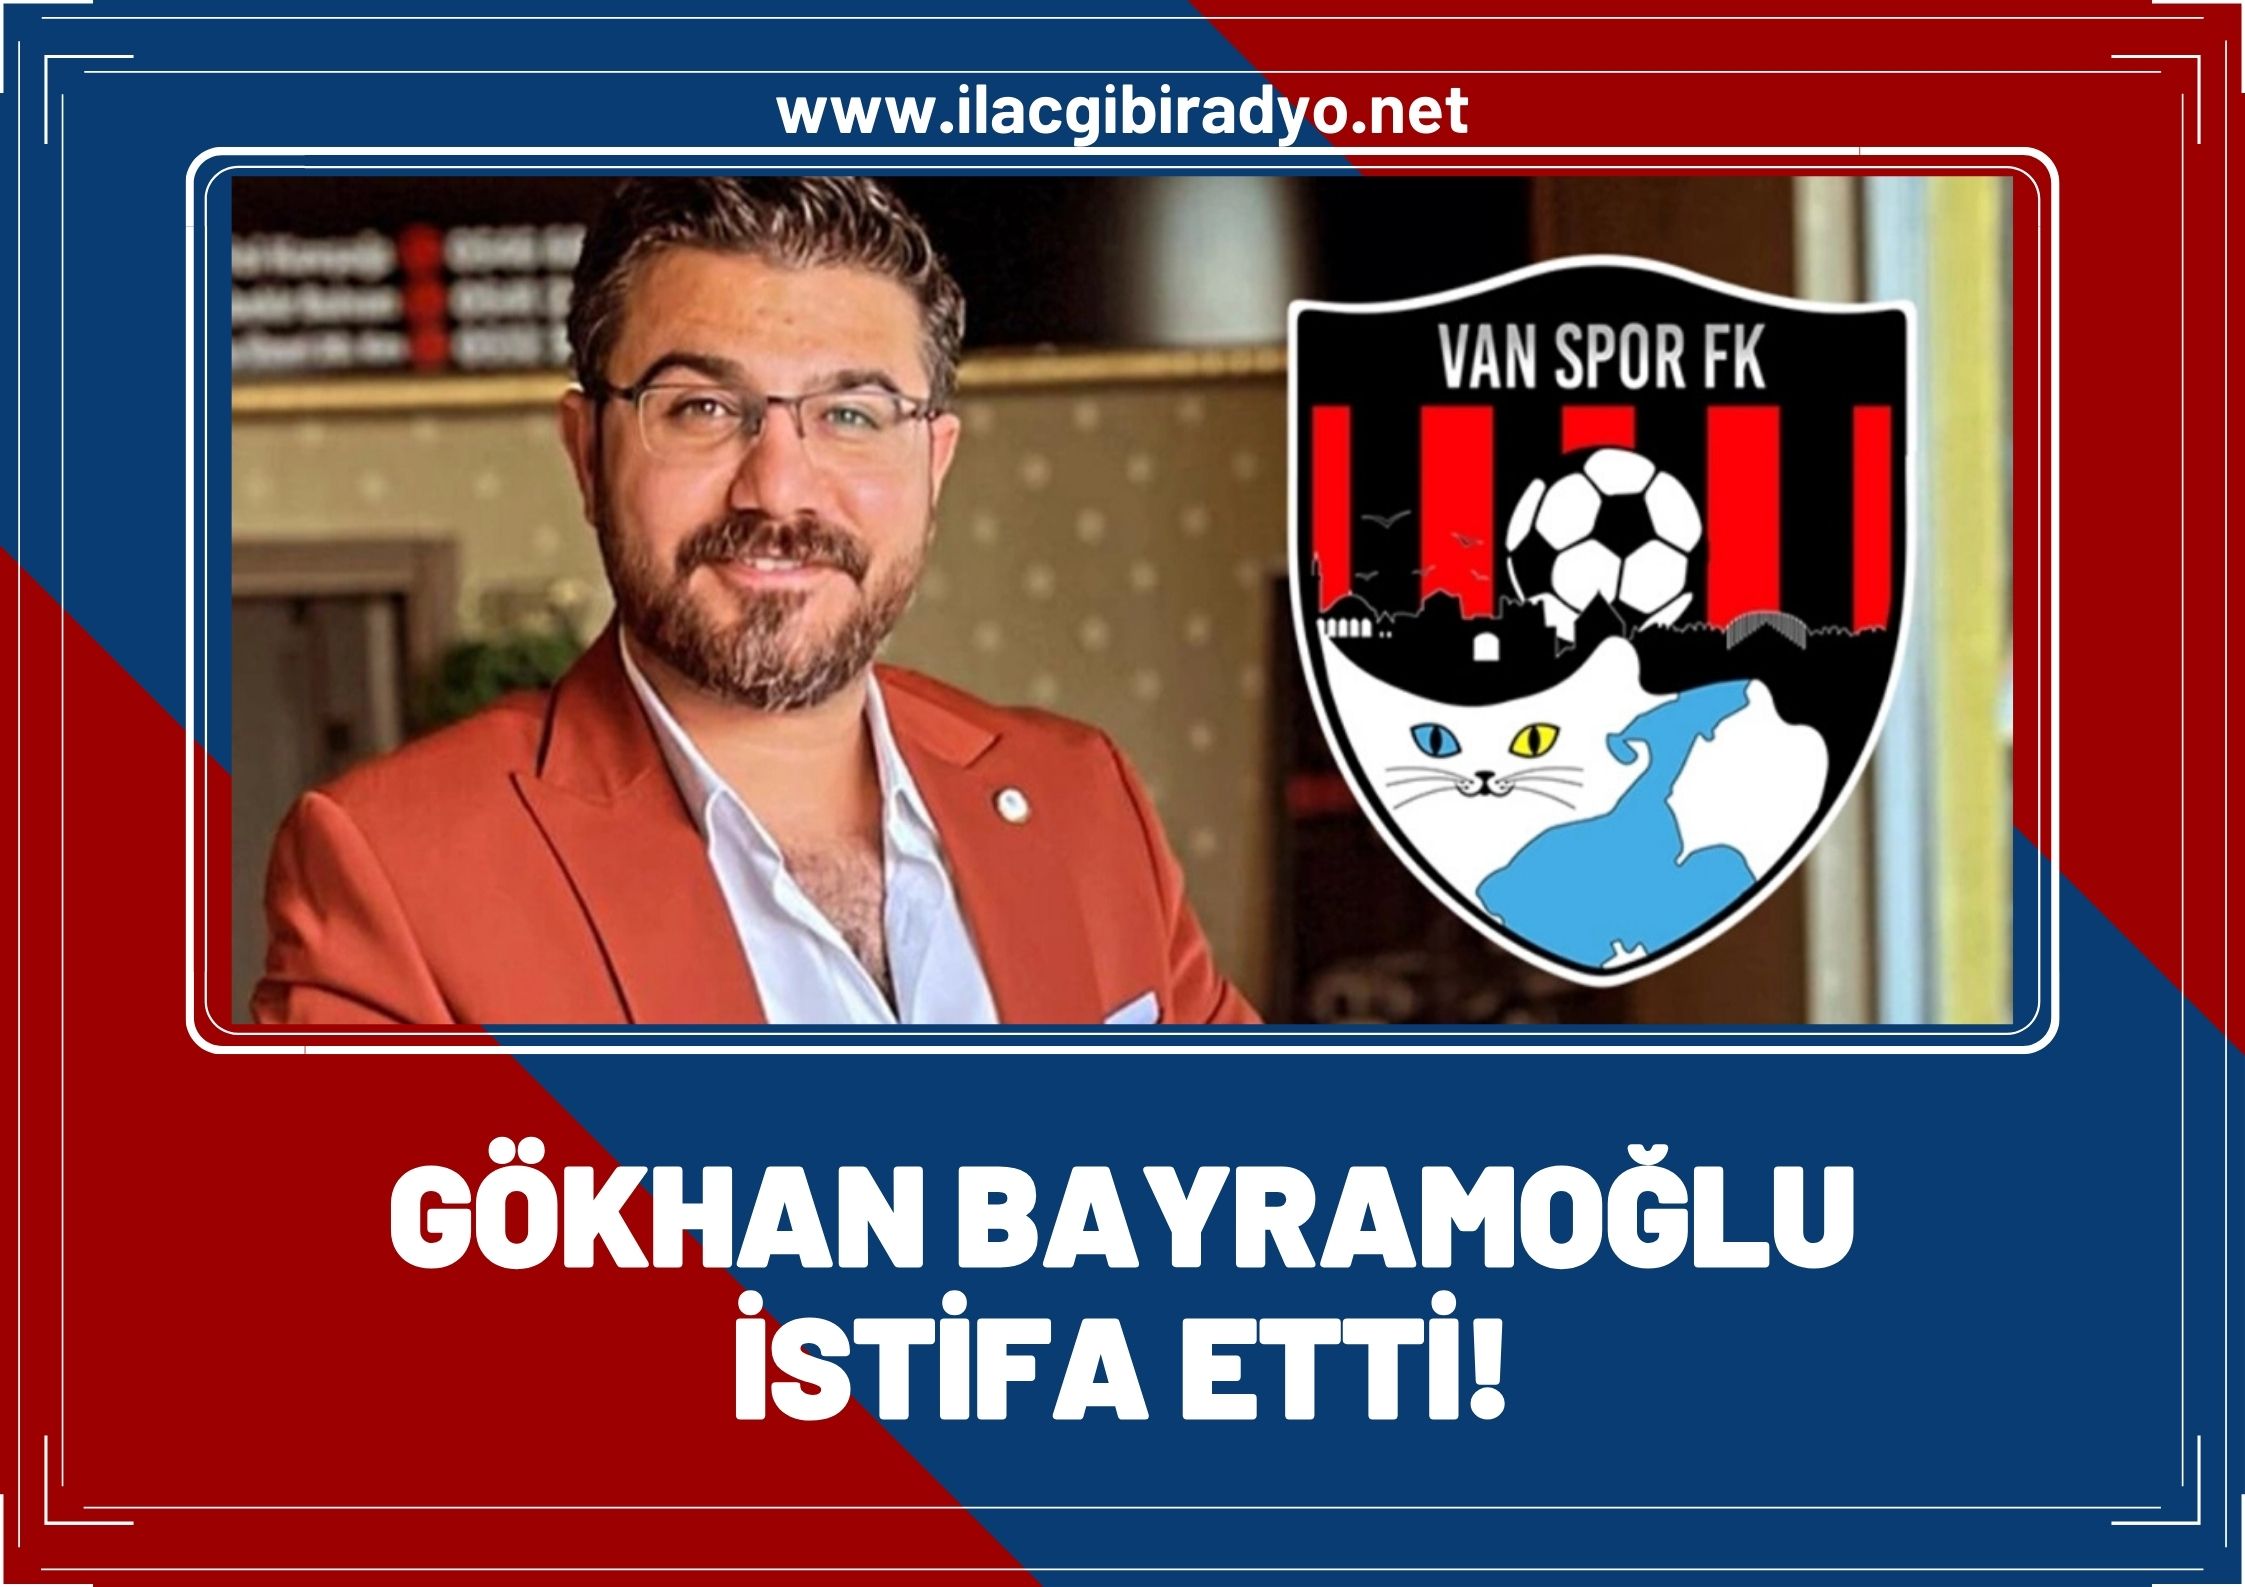 Gökhan Bayramoğlu Van Spor'dan istifa etti!